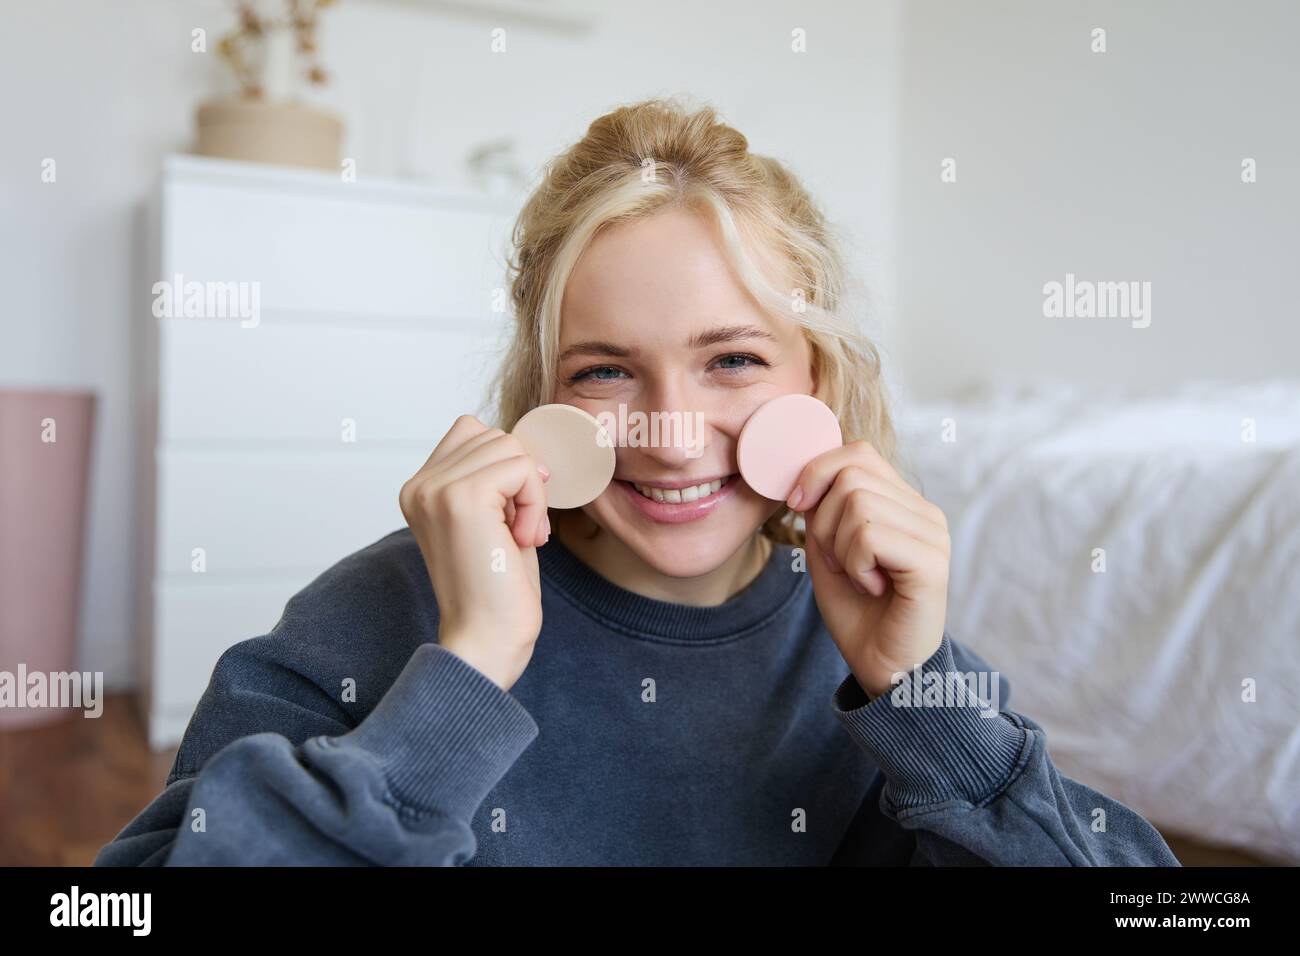 Primo piano di una giovane donna felice e bella, che mostra prodotti di bellezza sulla fotocamera, consiglia il trucco, seduto sul pavimento in camera da letto Foto Stock